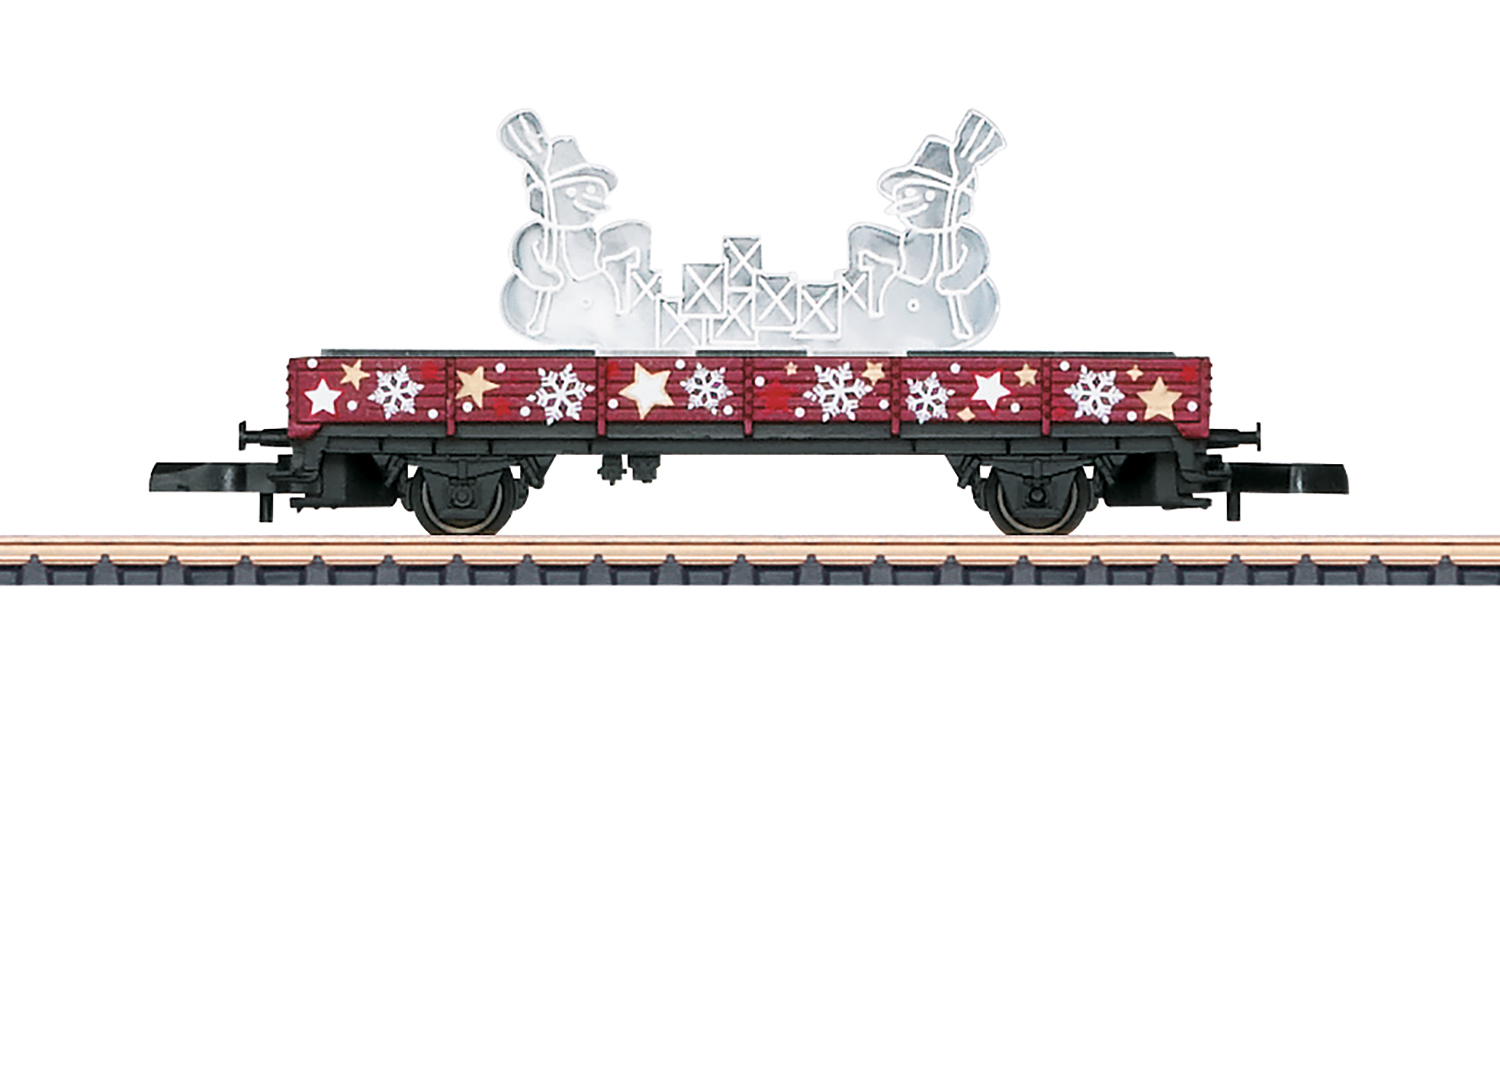 Marklin – Vagón de navidad del año 2019, Escala Z, Ref: 80629.